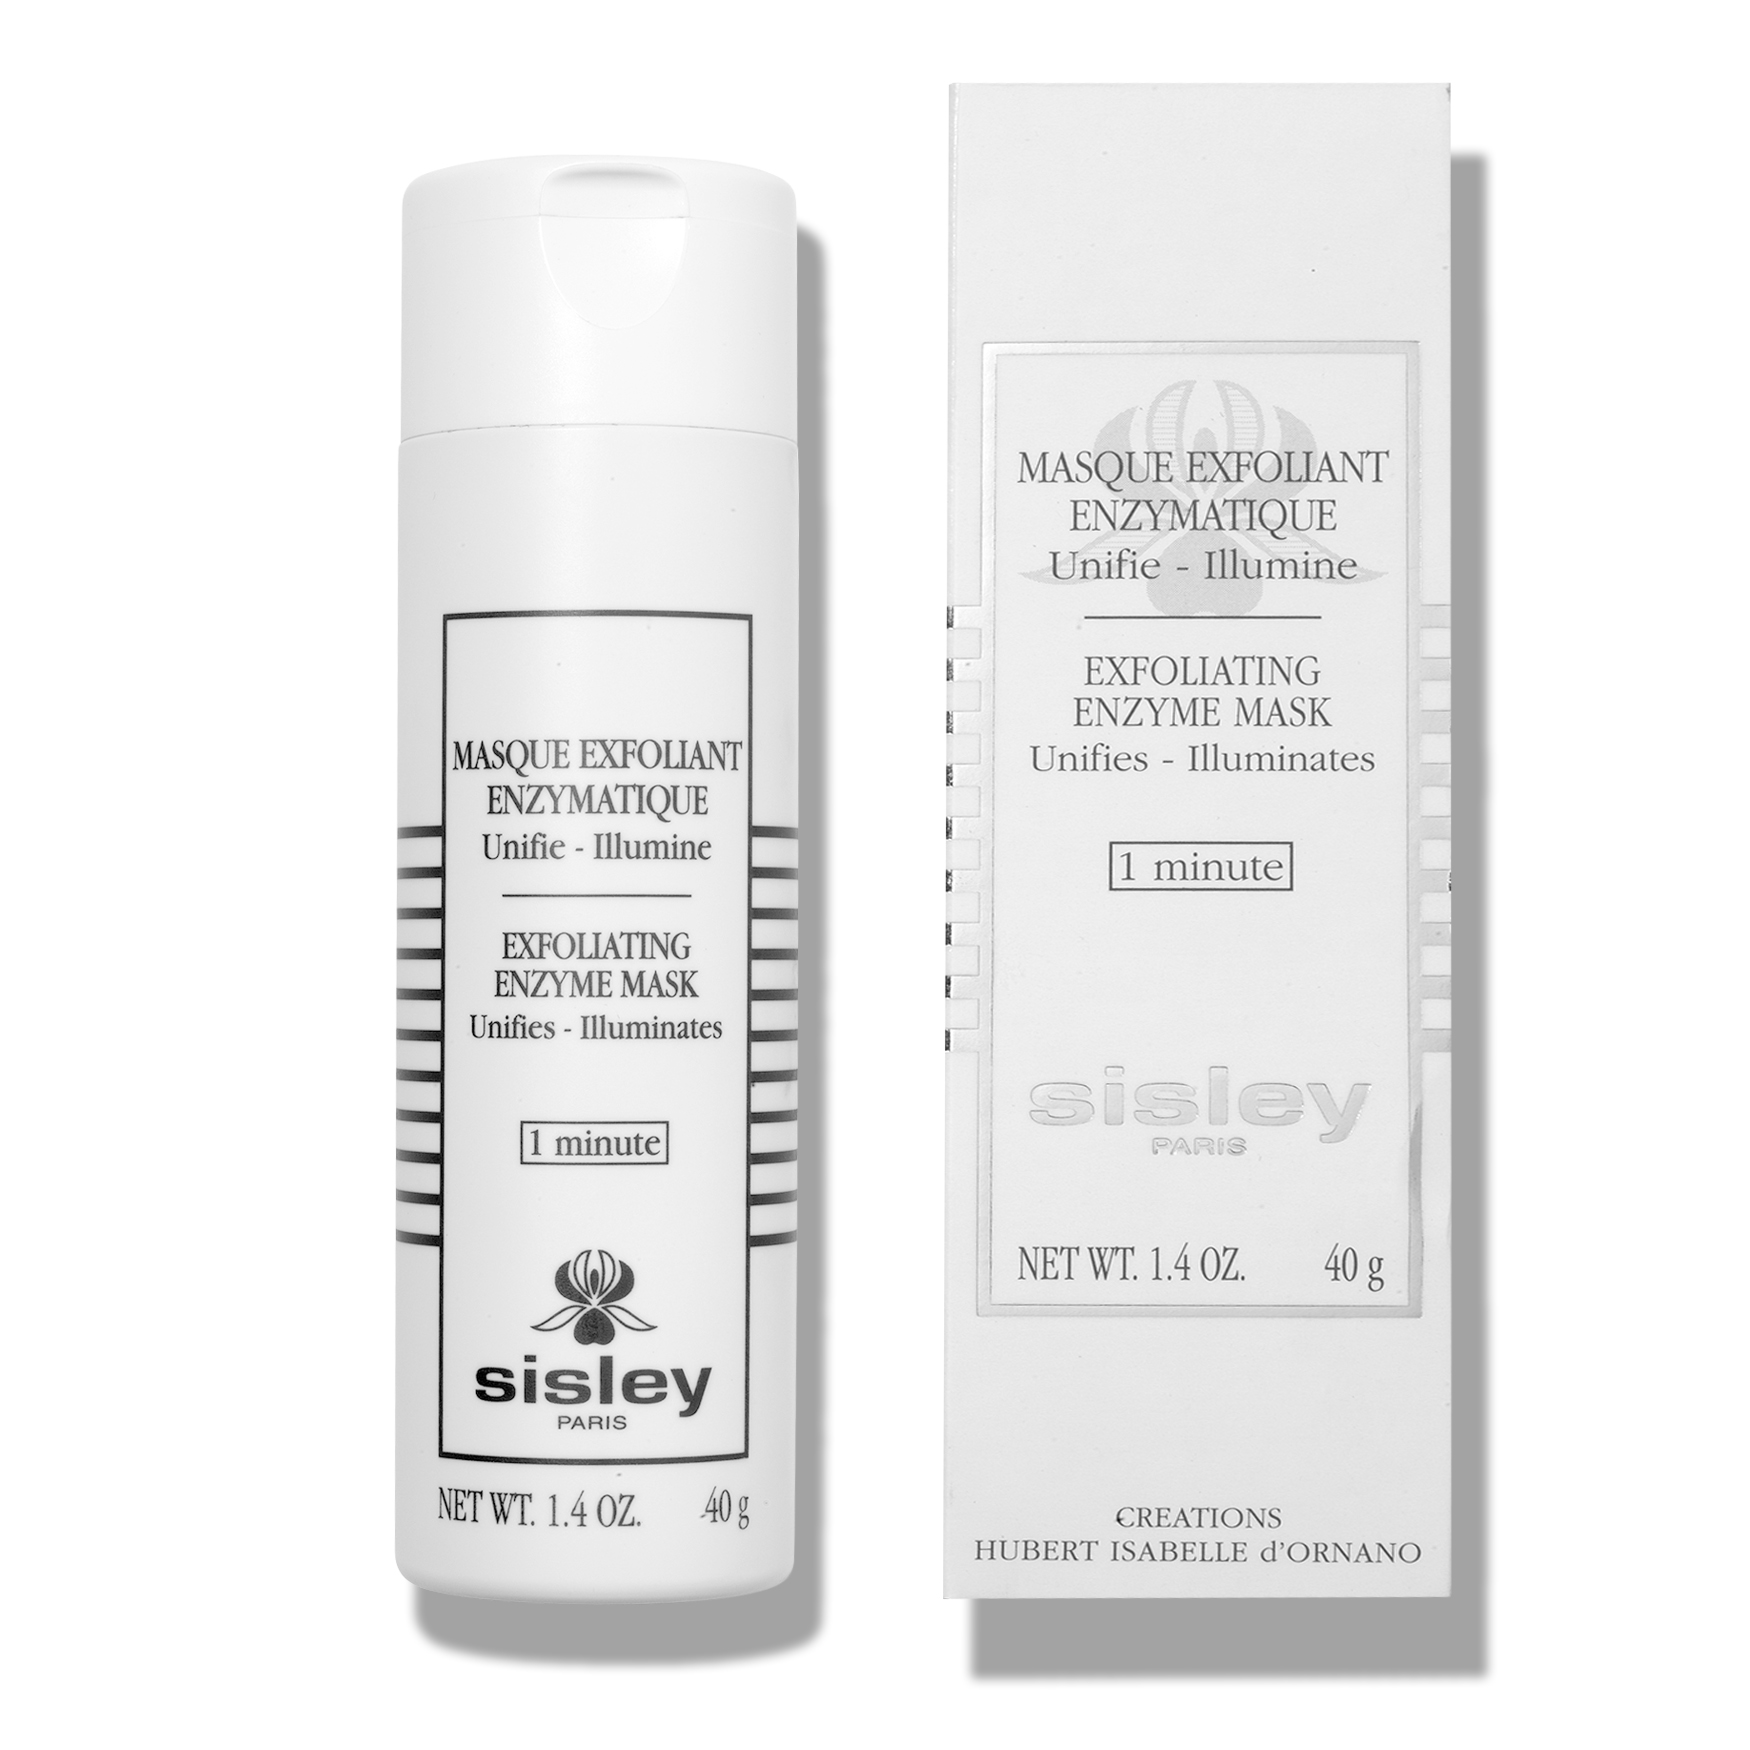 Sisley-Paris Masque exfoliant aux enzymes | Space NK